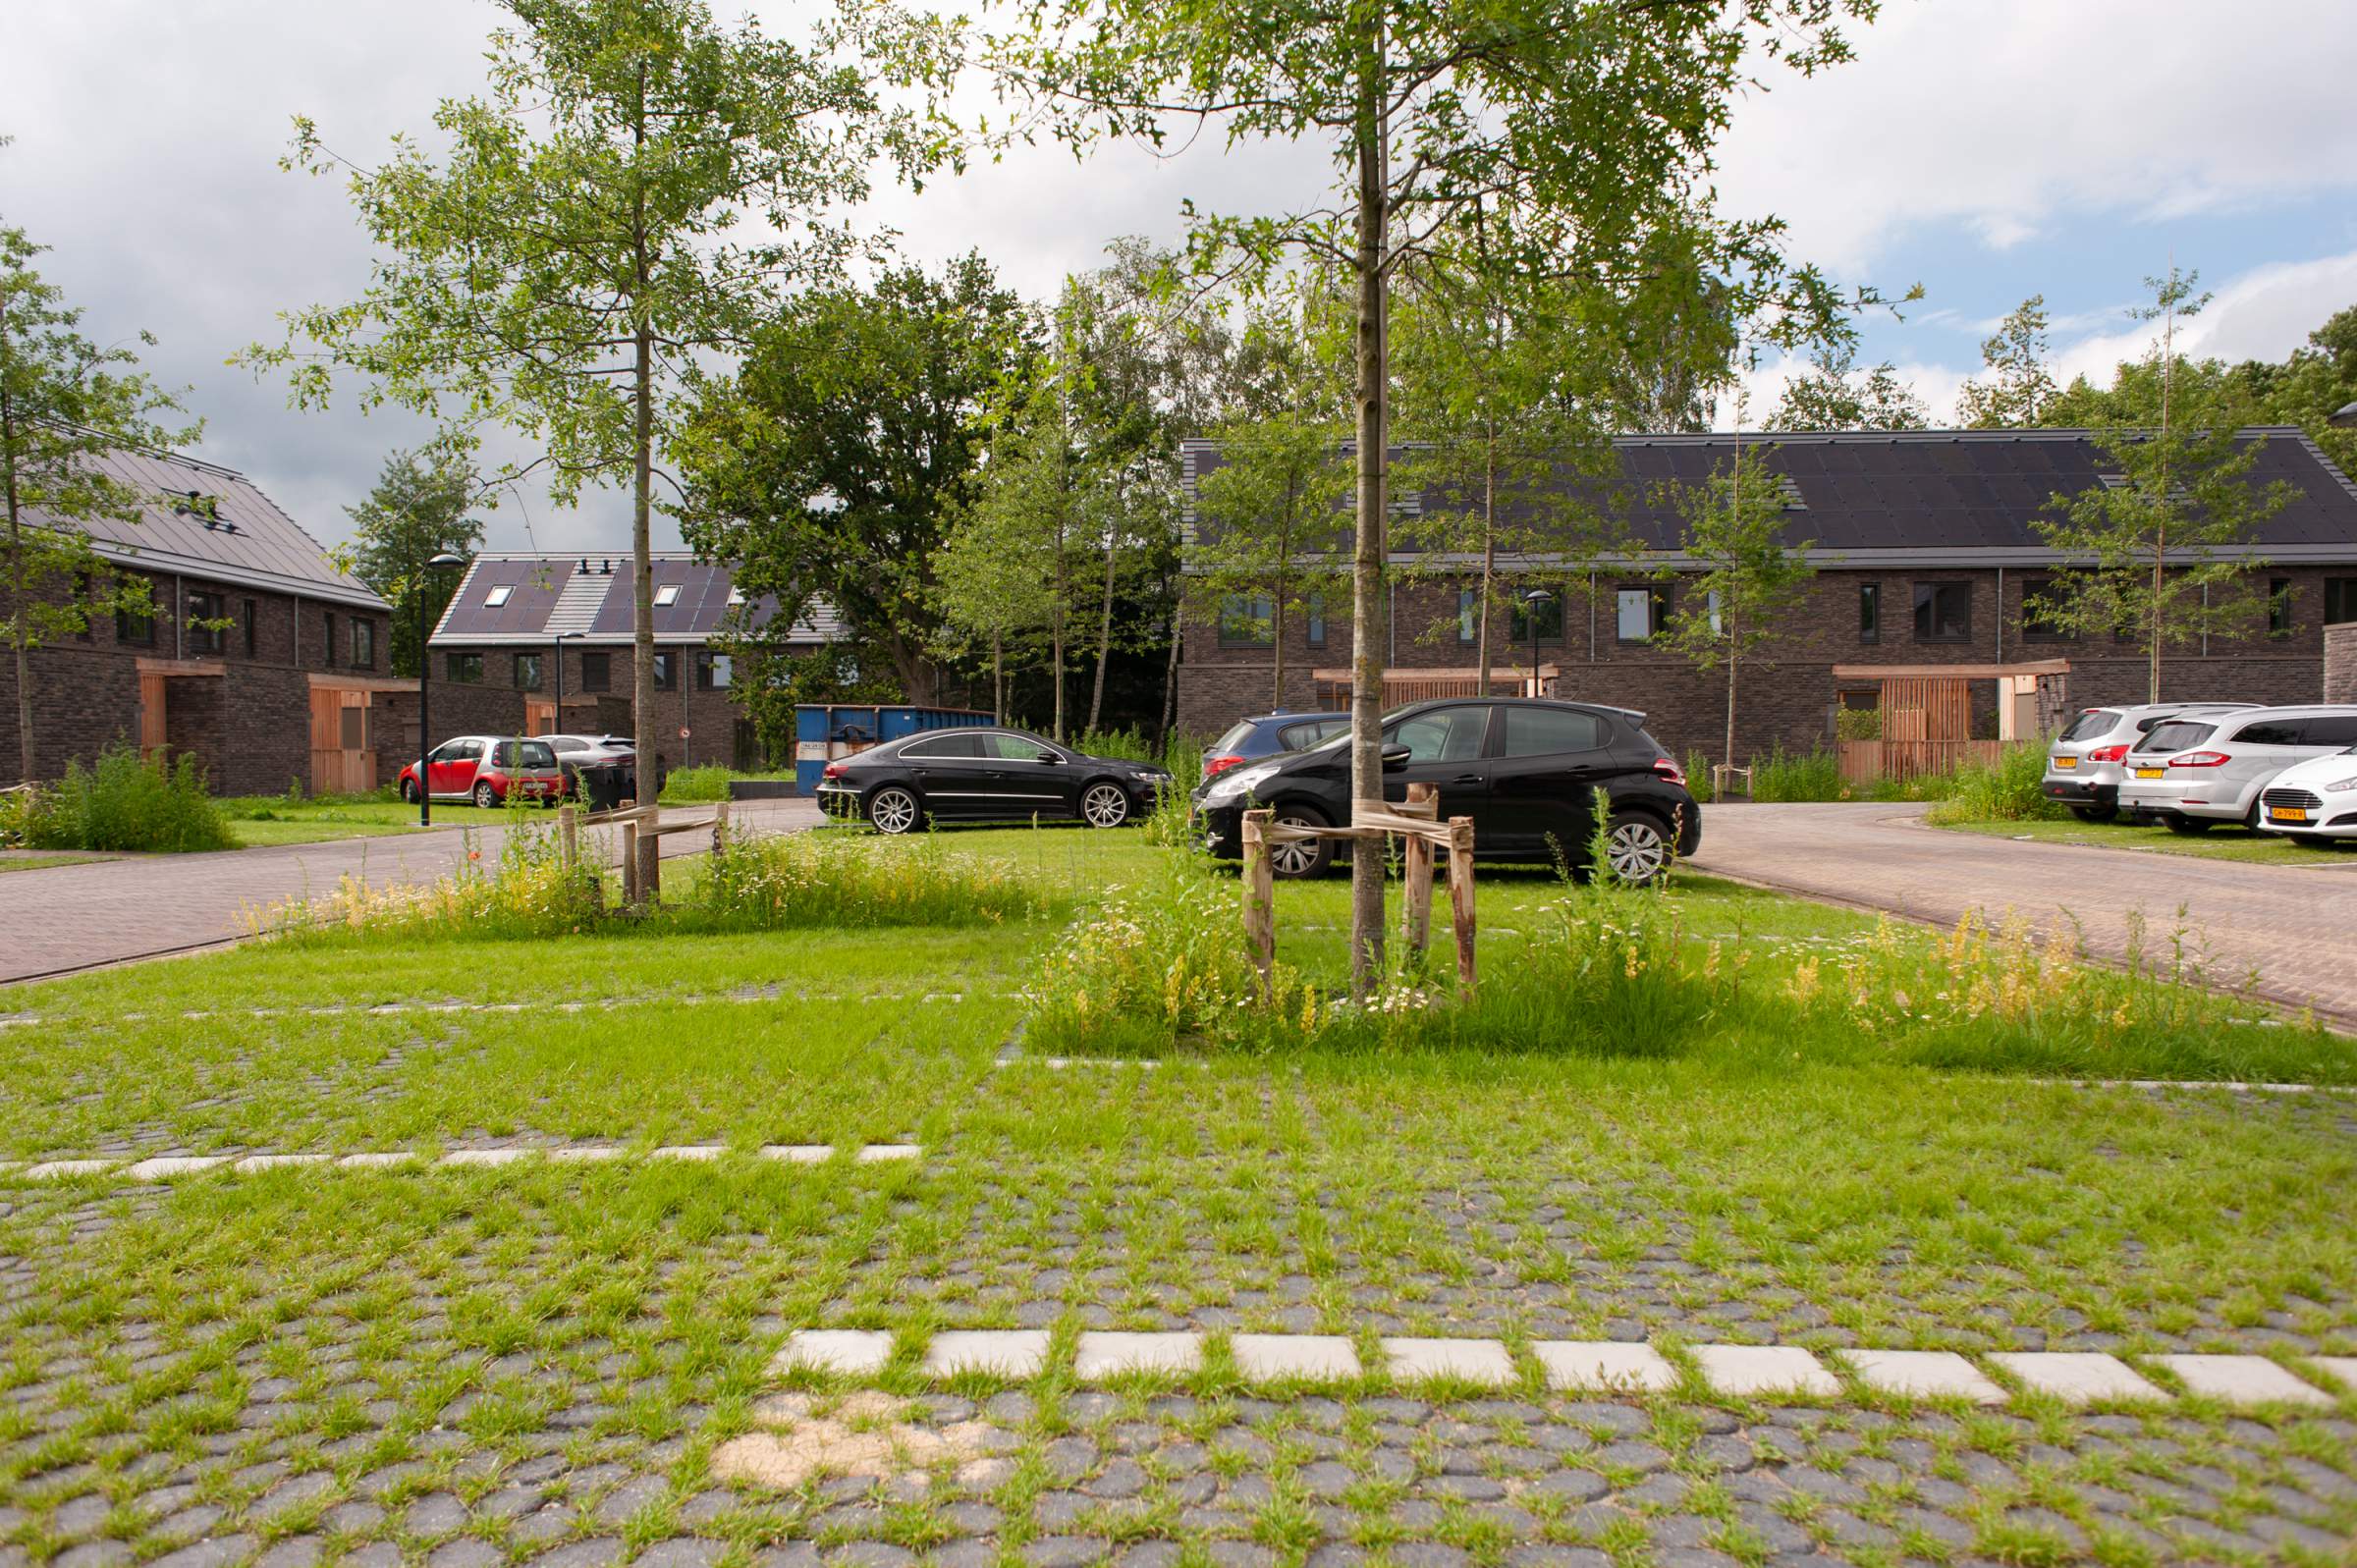 Wickevoort green parking spaces